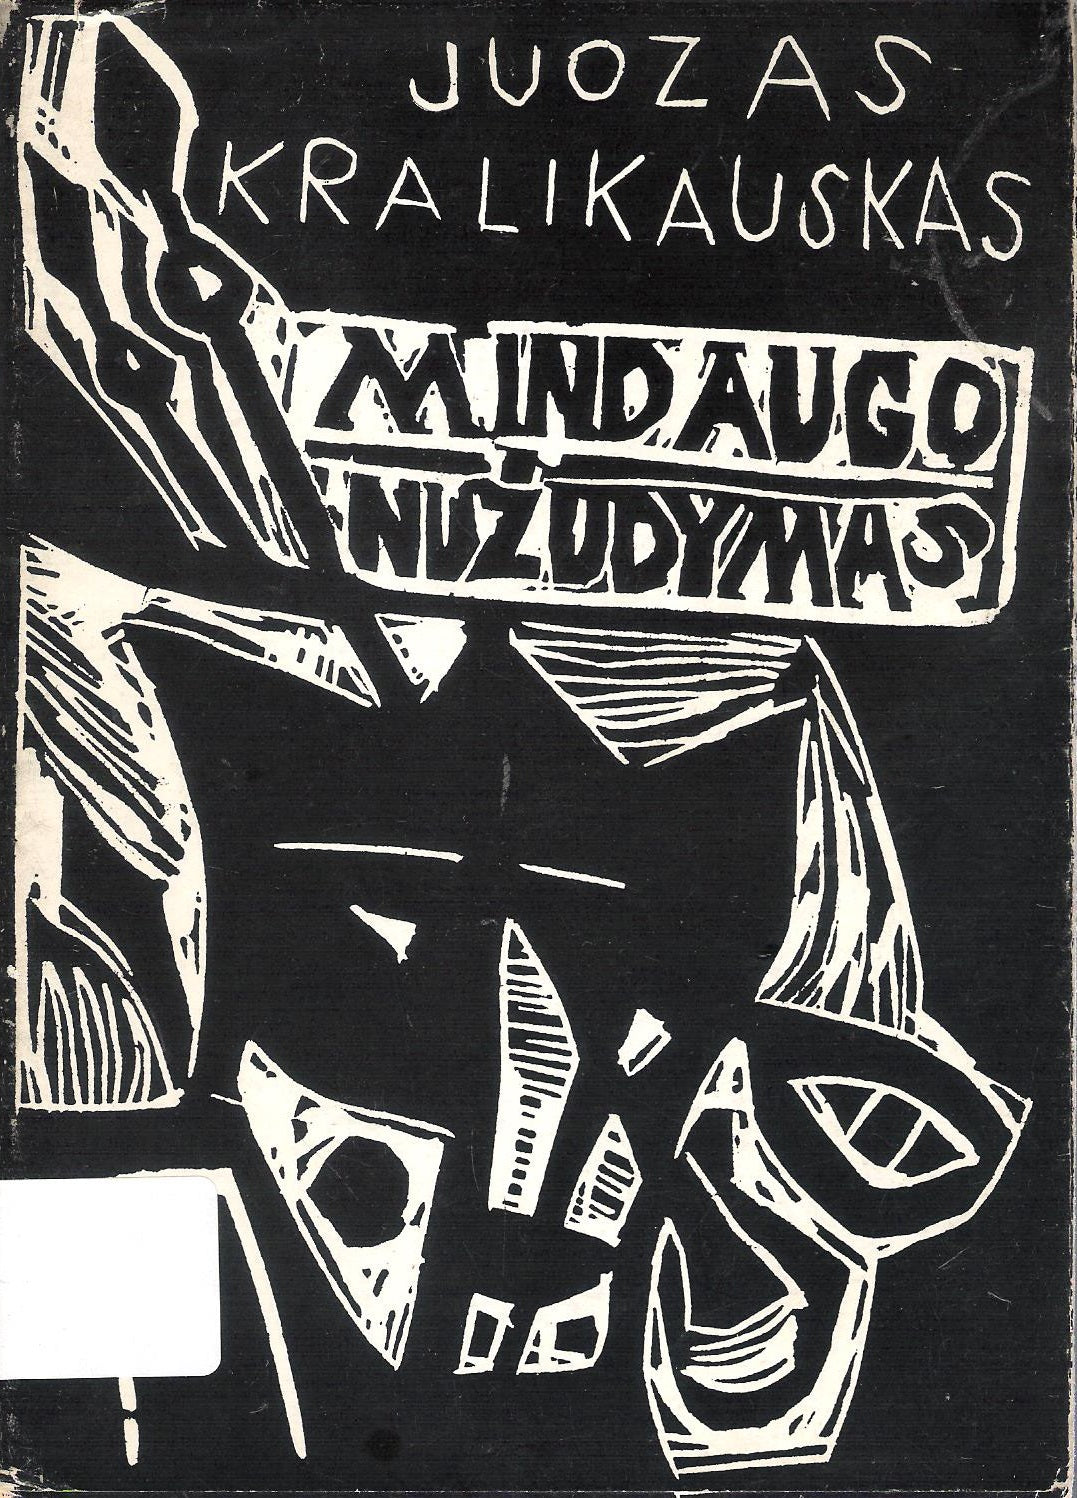 Juozas Kralikauskas - Mindaugo nužudymas, Chicago, 1964